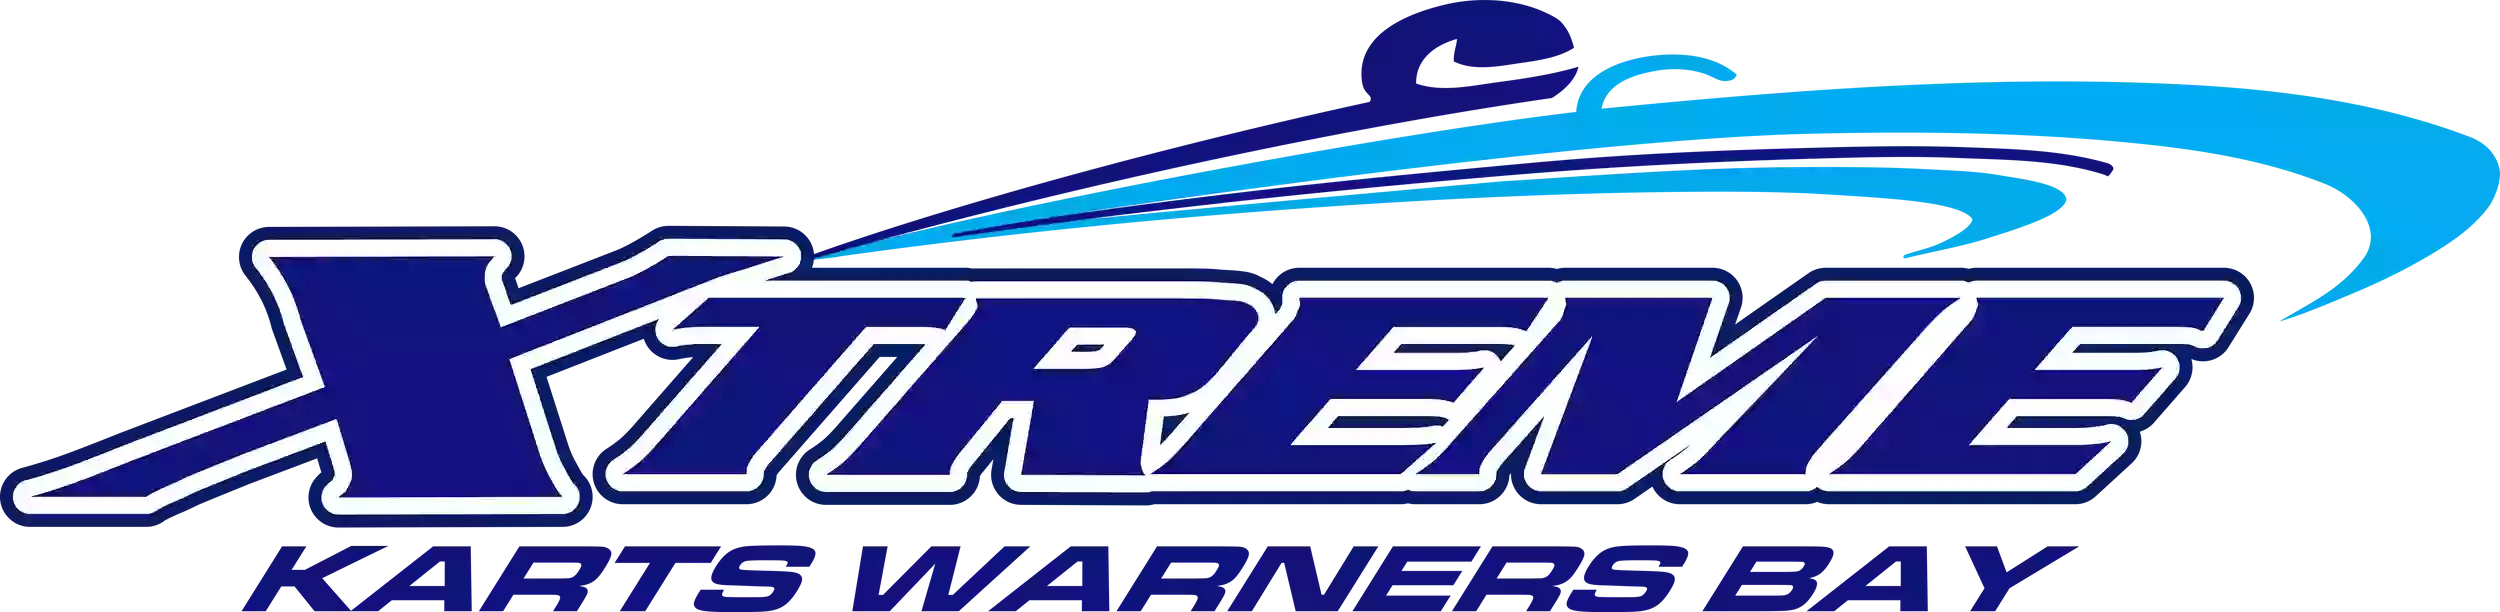 Xtreme Karts Warners Bay